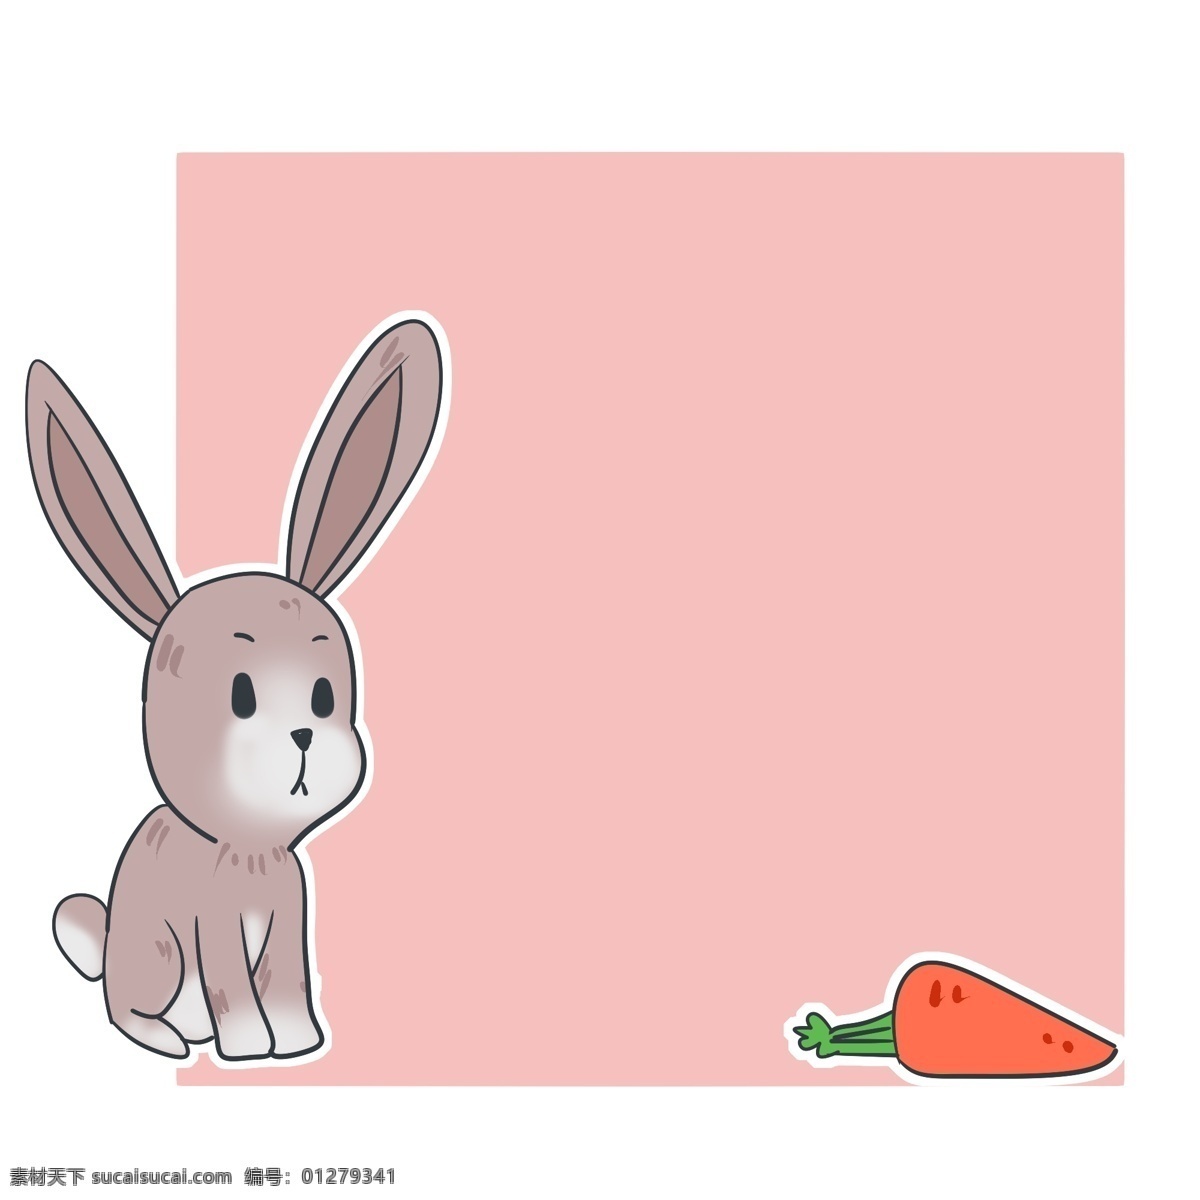 粉色 装饰 兔子 边框 可爱 小 红色红萝卜 粉色装饰边框 可爱兔子边框 卡通动物装饰 边框插画